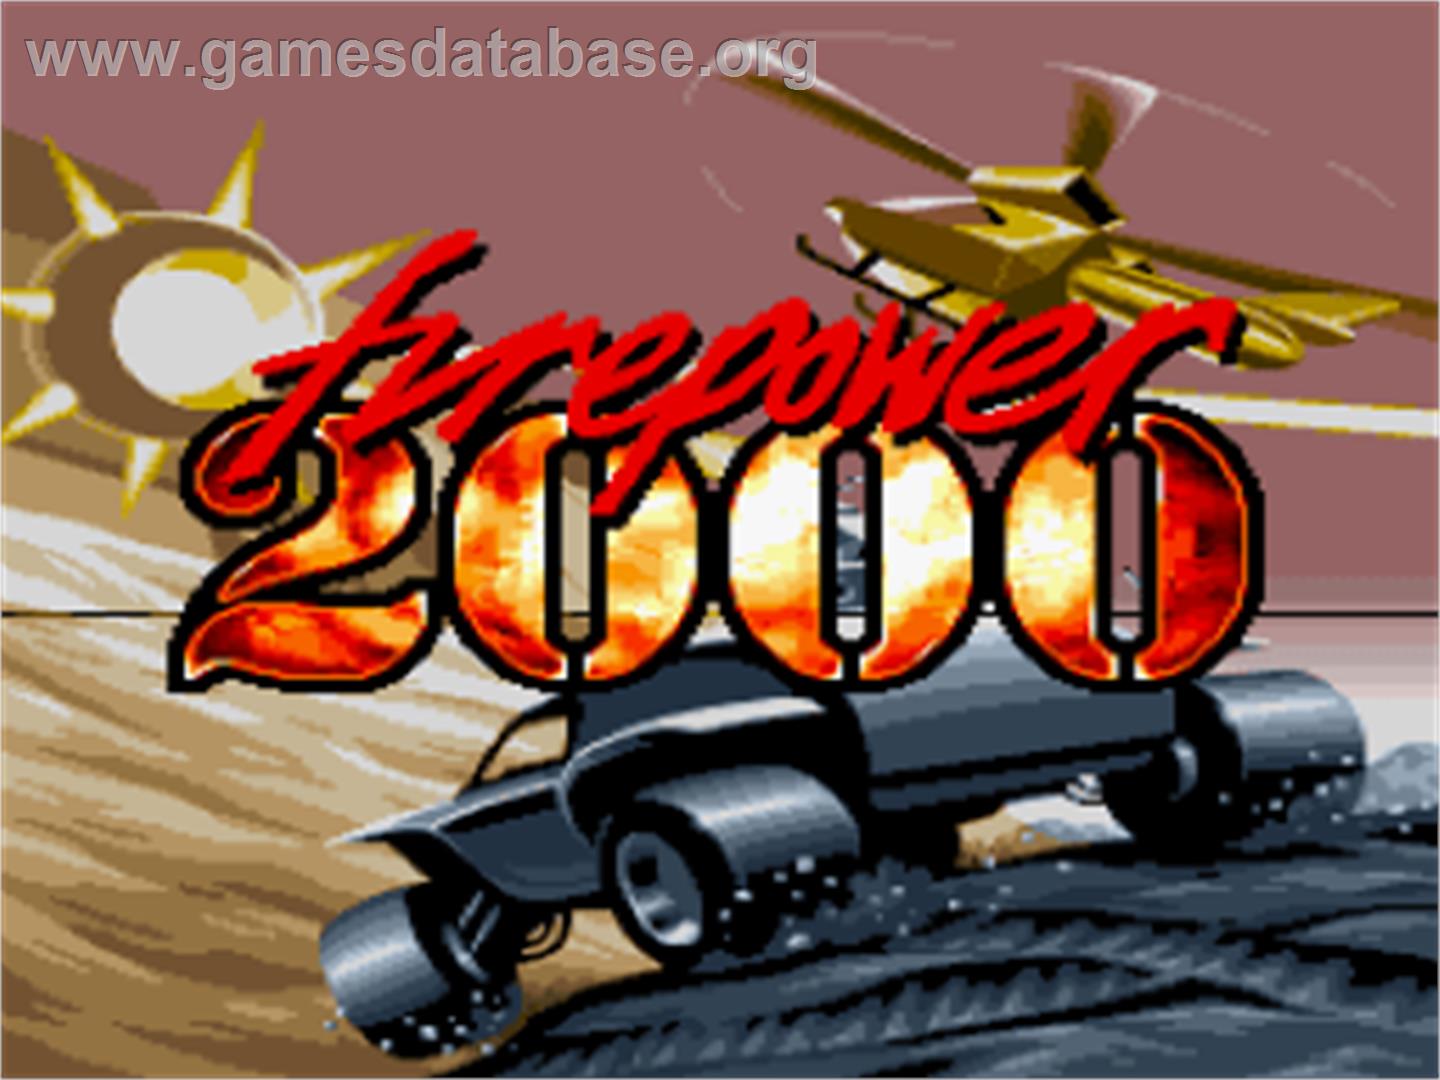 Firepower 2000 - Nintendo SNES - Artwork - Title Screen